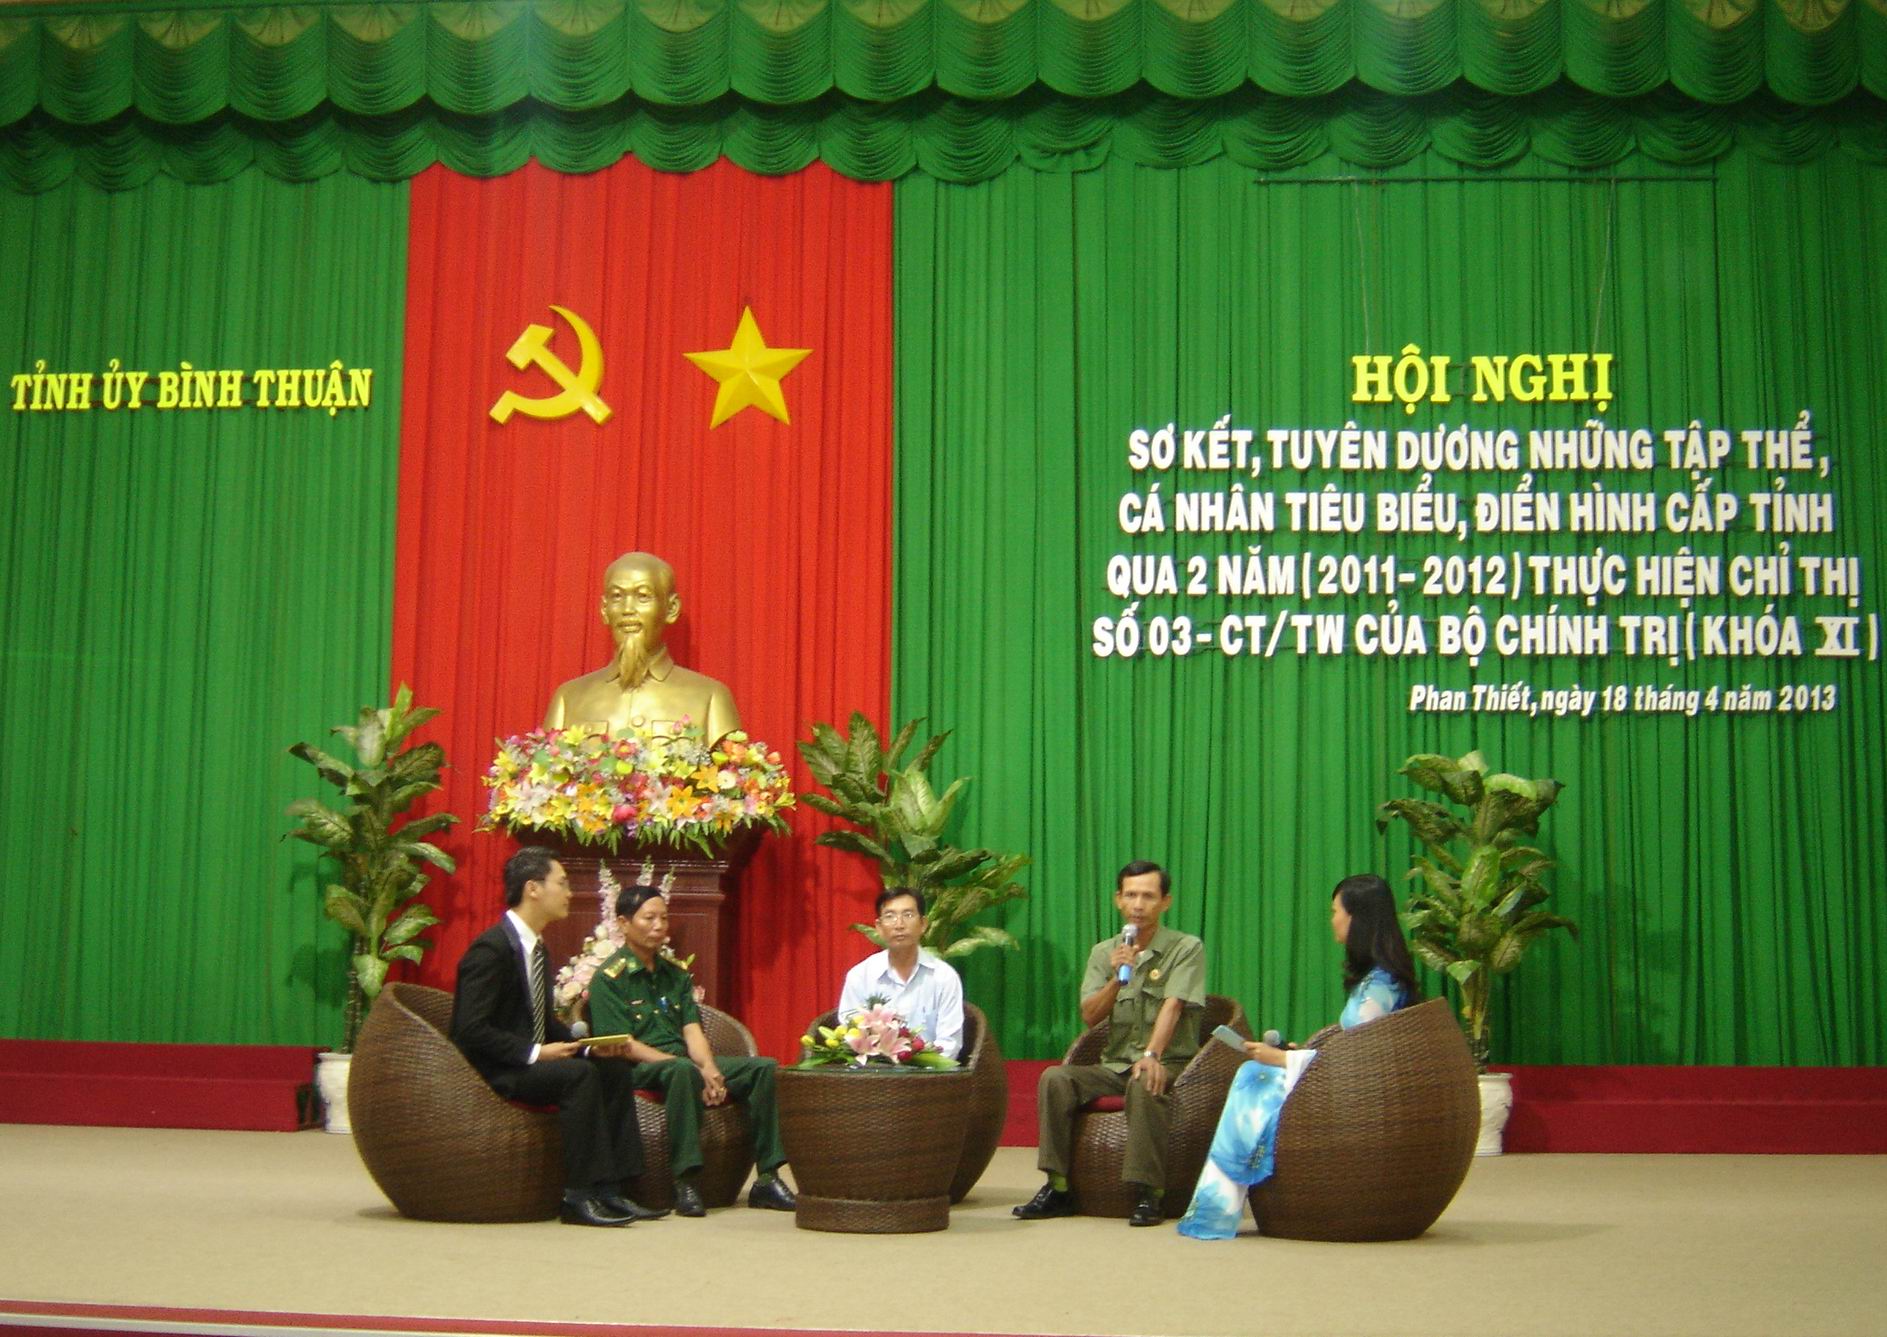 Giao lưu giữa các điển hình tiên tiến trong việc thực hiện Chỉ thị số 03-CT/TW của Bộ Chính trị (khóa XI) tại Bình Thuận